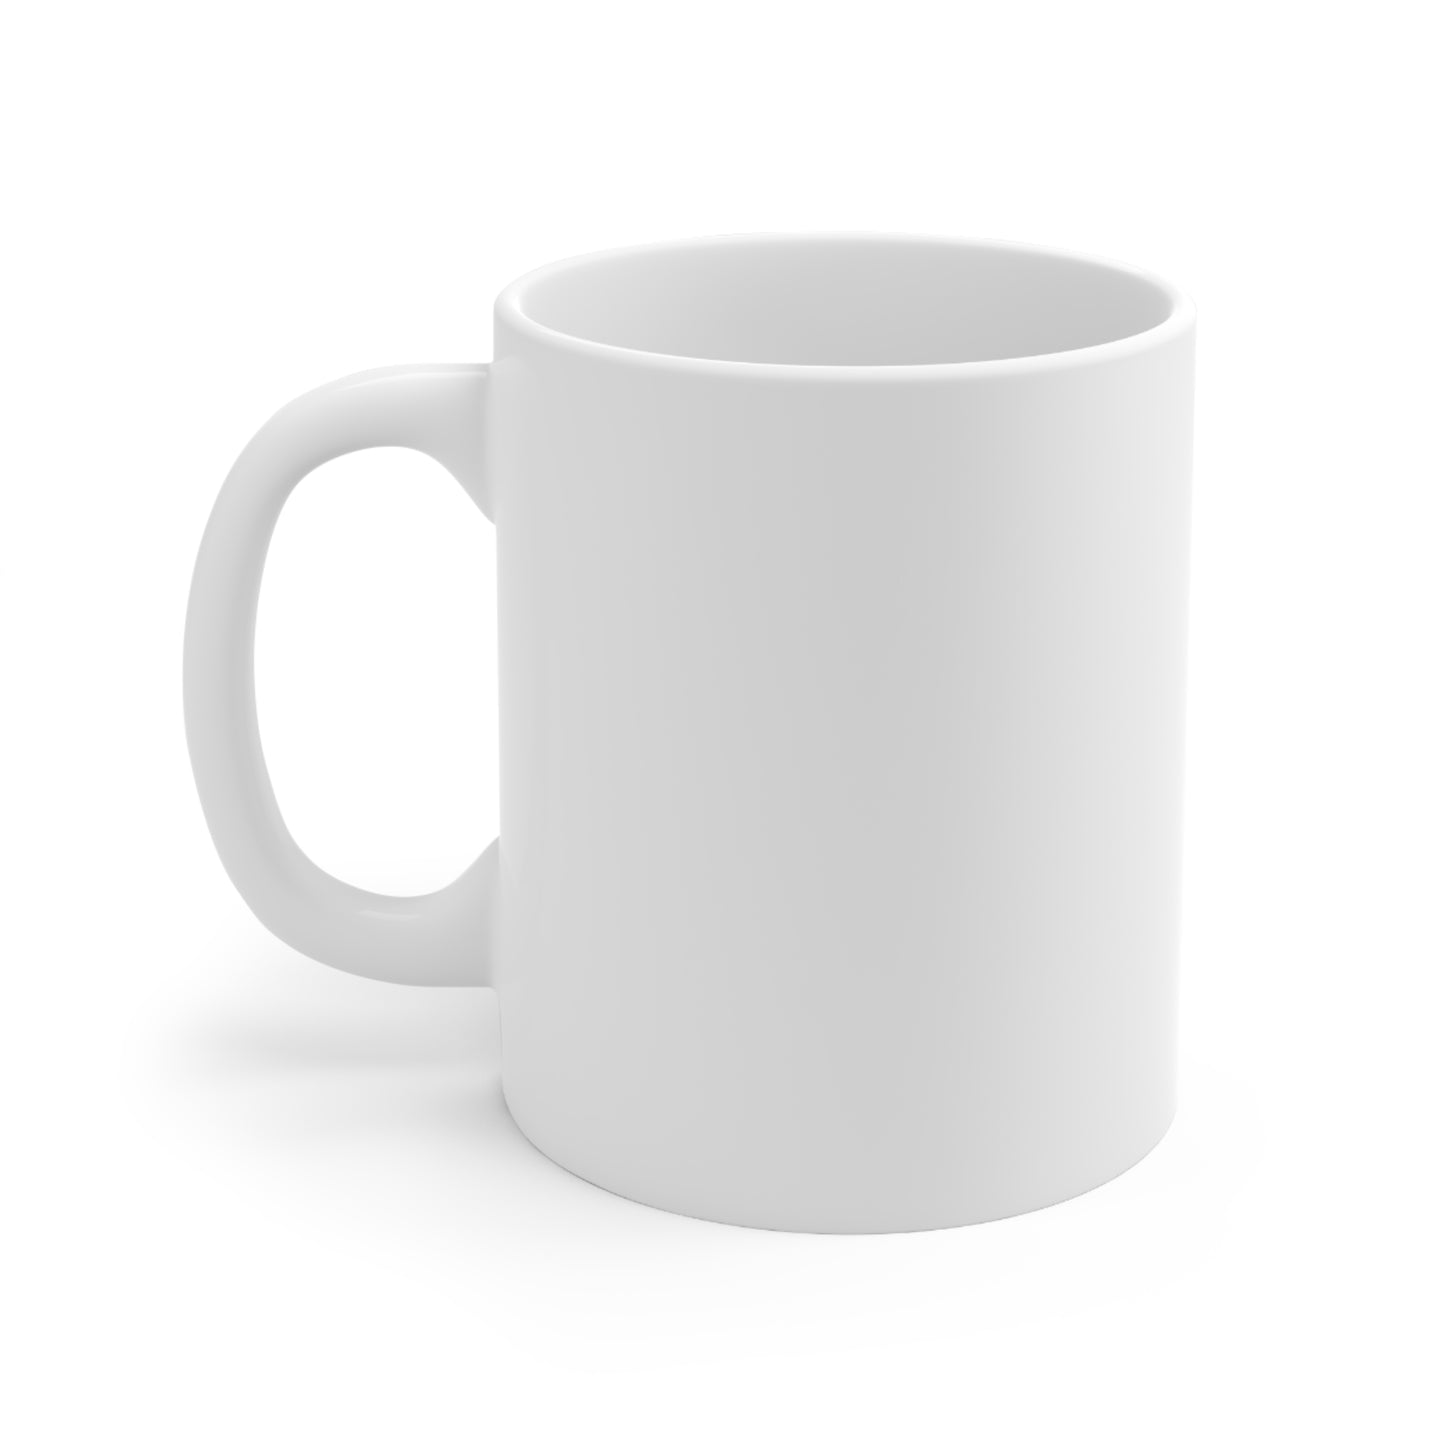 You're Great - Ceramic Mug 11oz